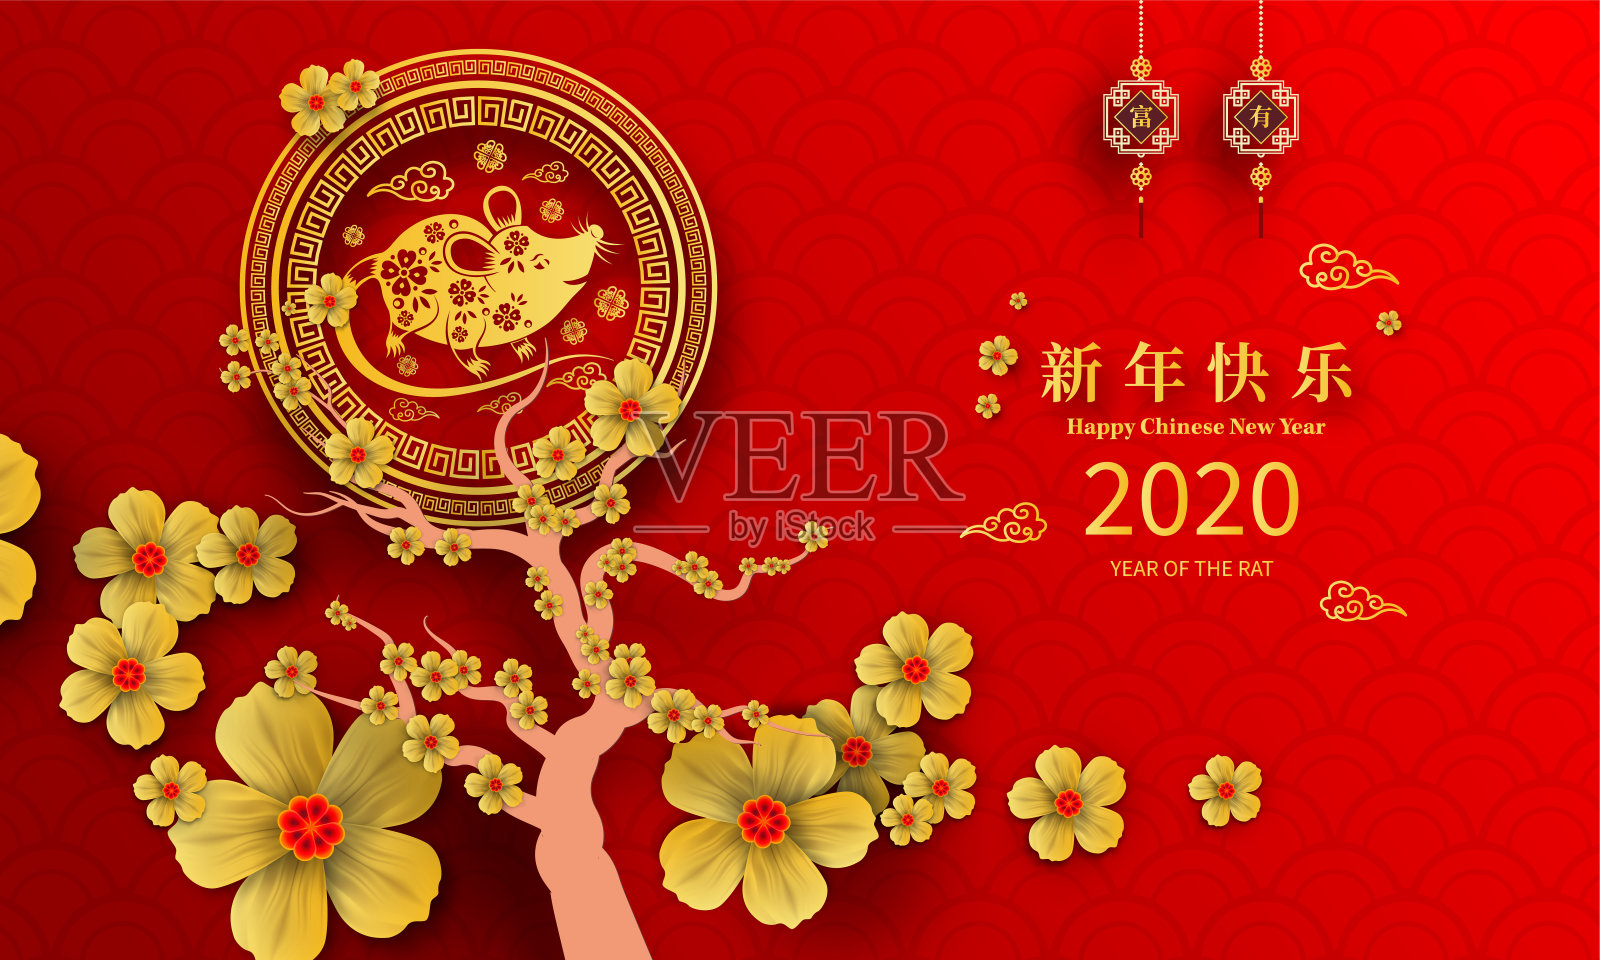 快乐中国新年2020鼠年剪纸风格。汉字意味着新年快乐，富有。2020年农历新年。贺卡、请帖、海报、横幅、日历等十二生肖标志设计模板素材